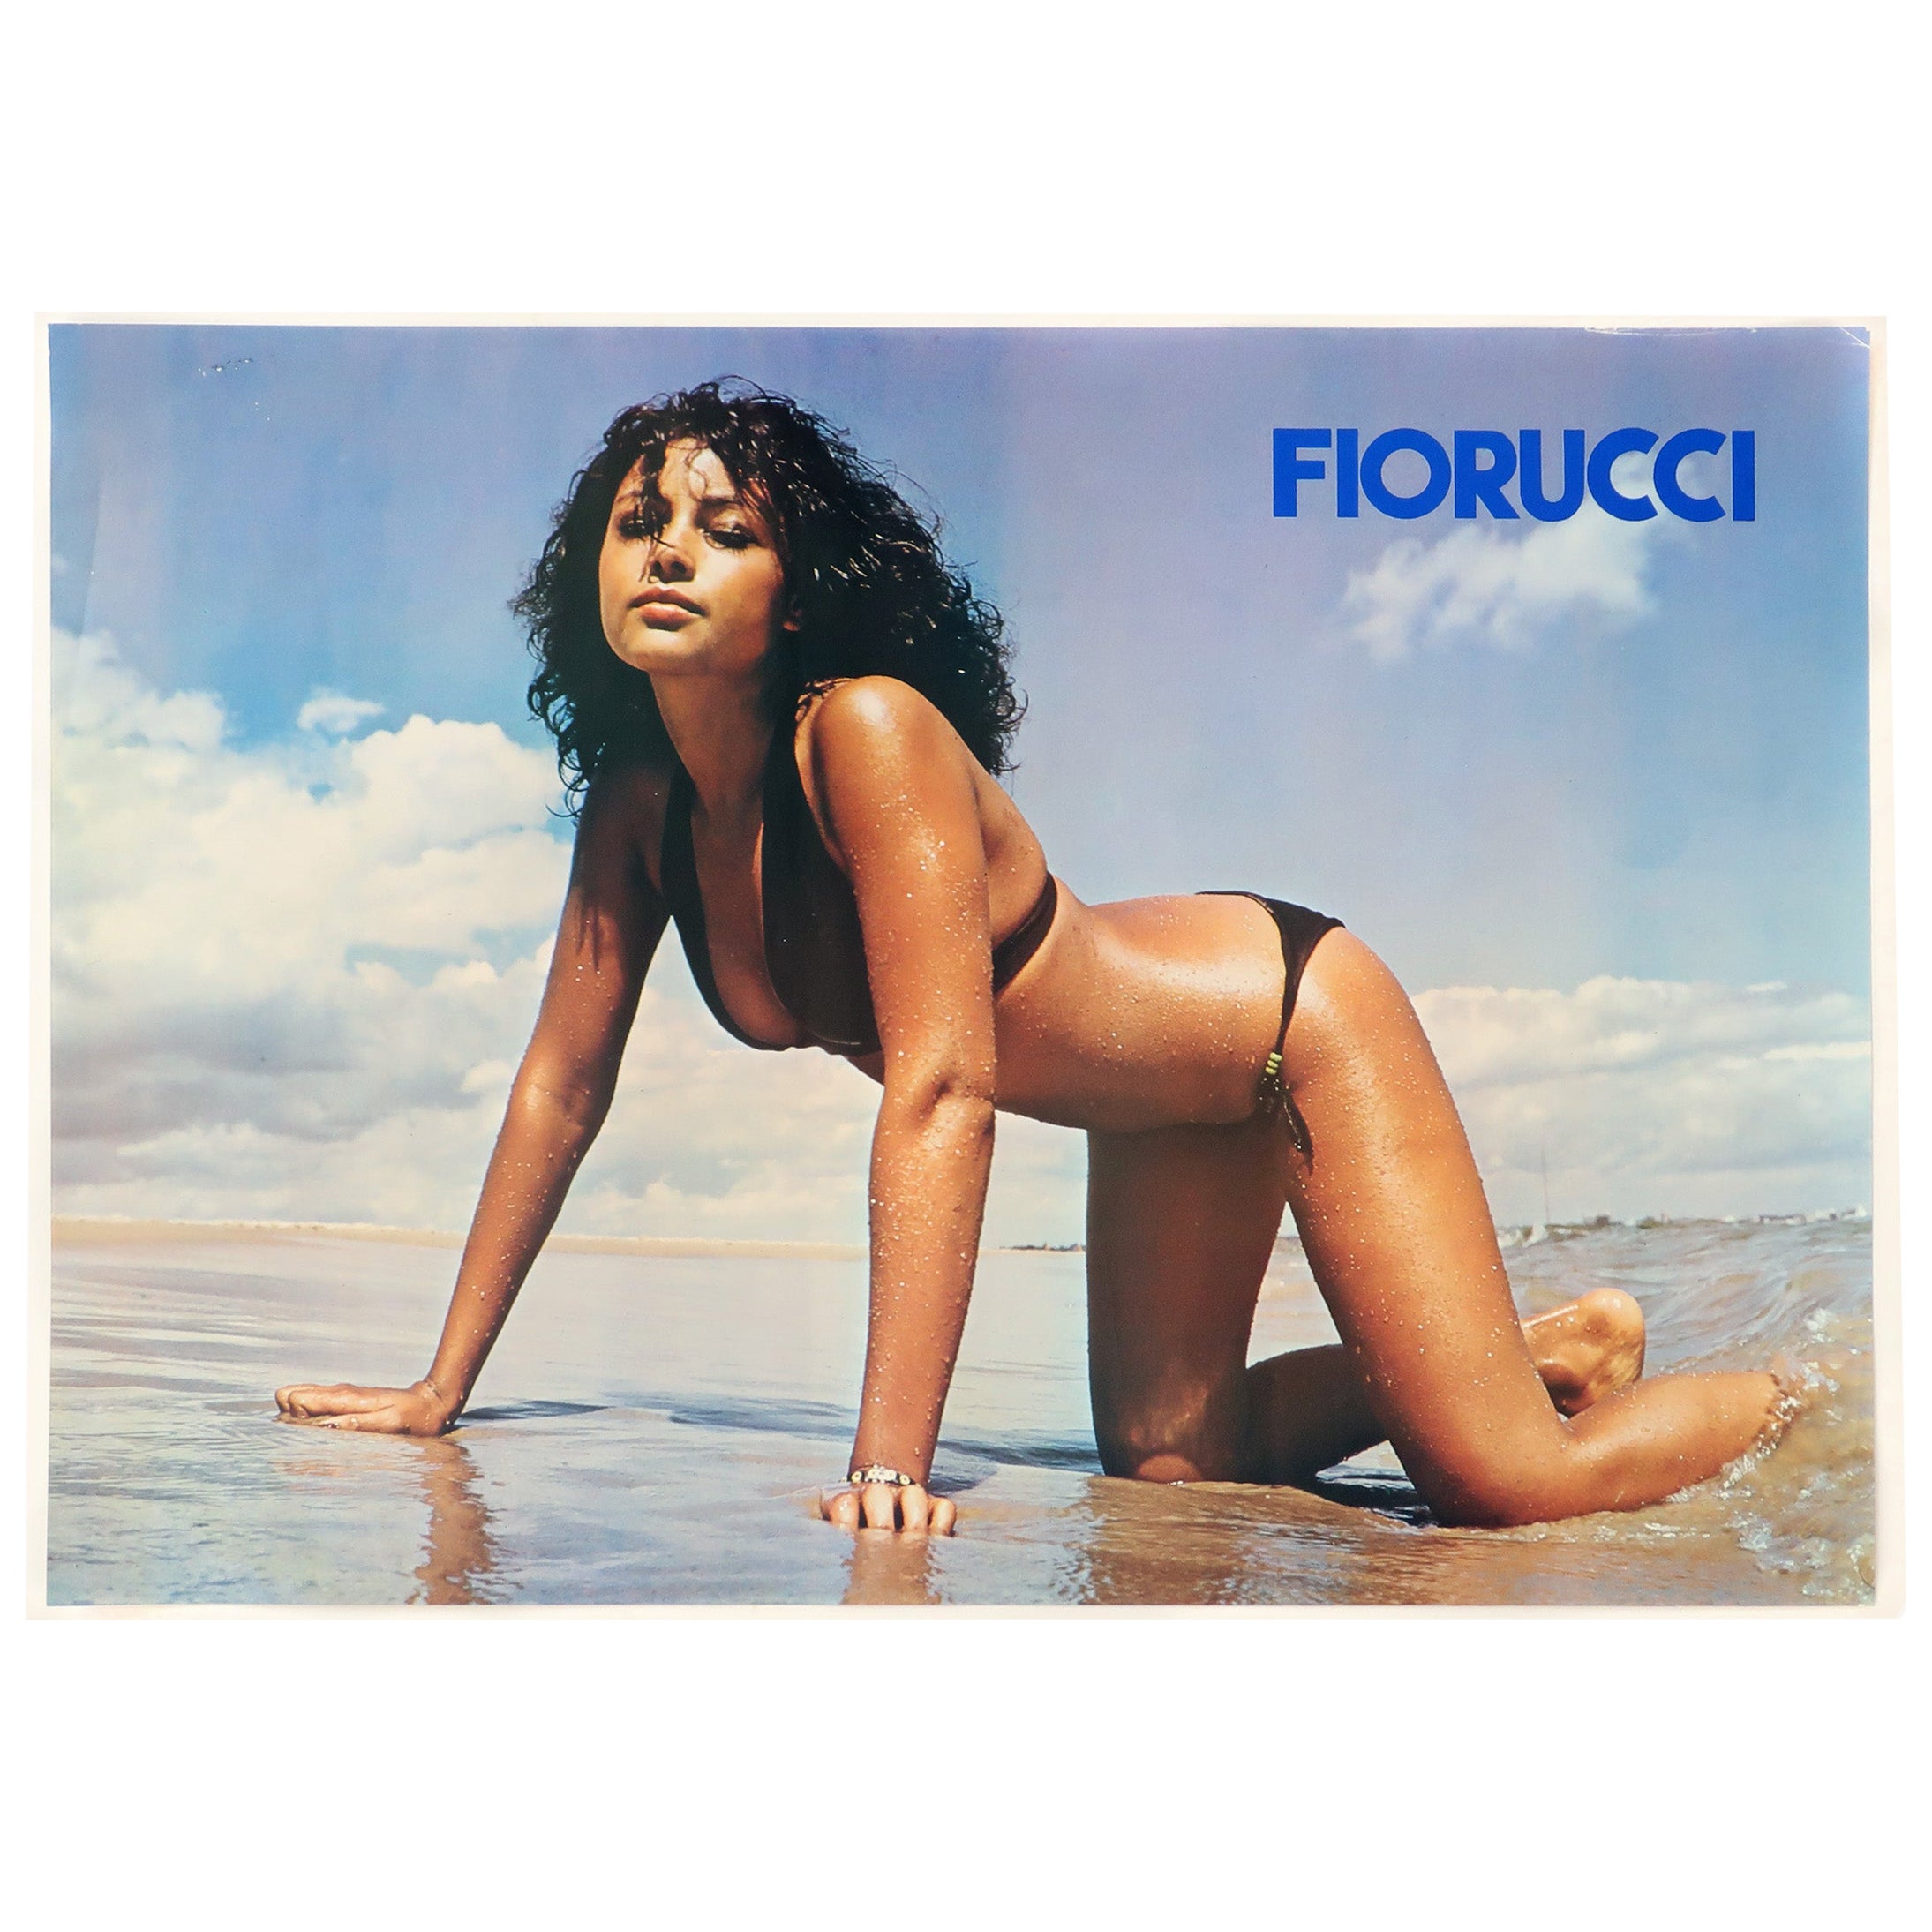 Vintage Fiorucci Beach Bikini Poster 